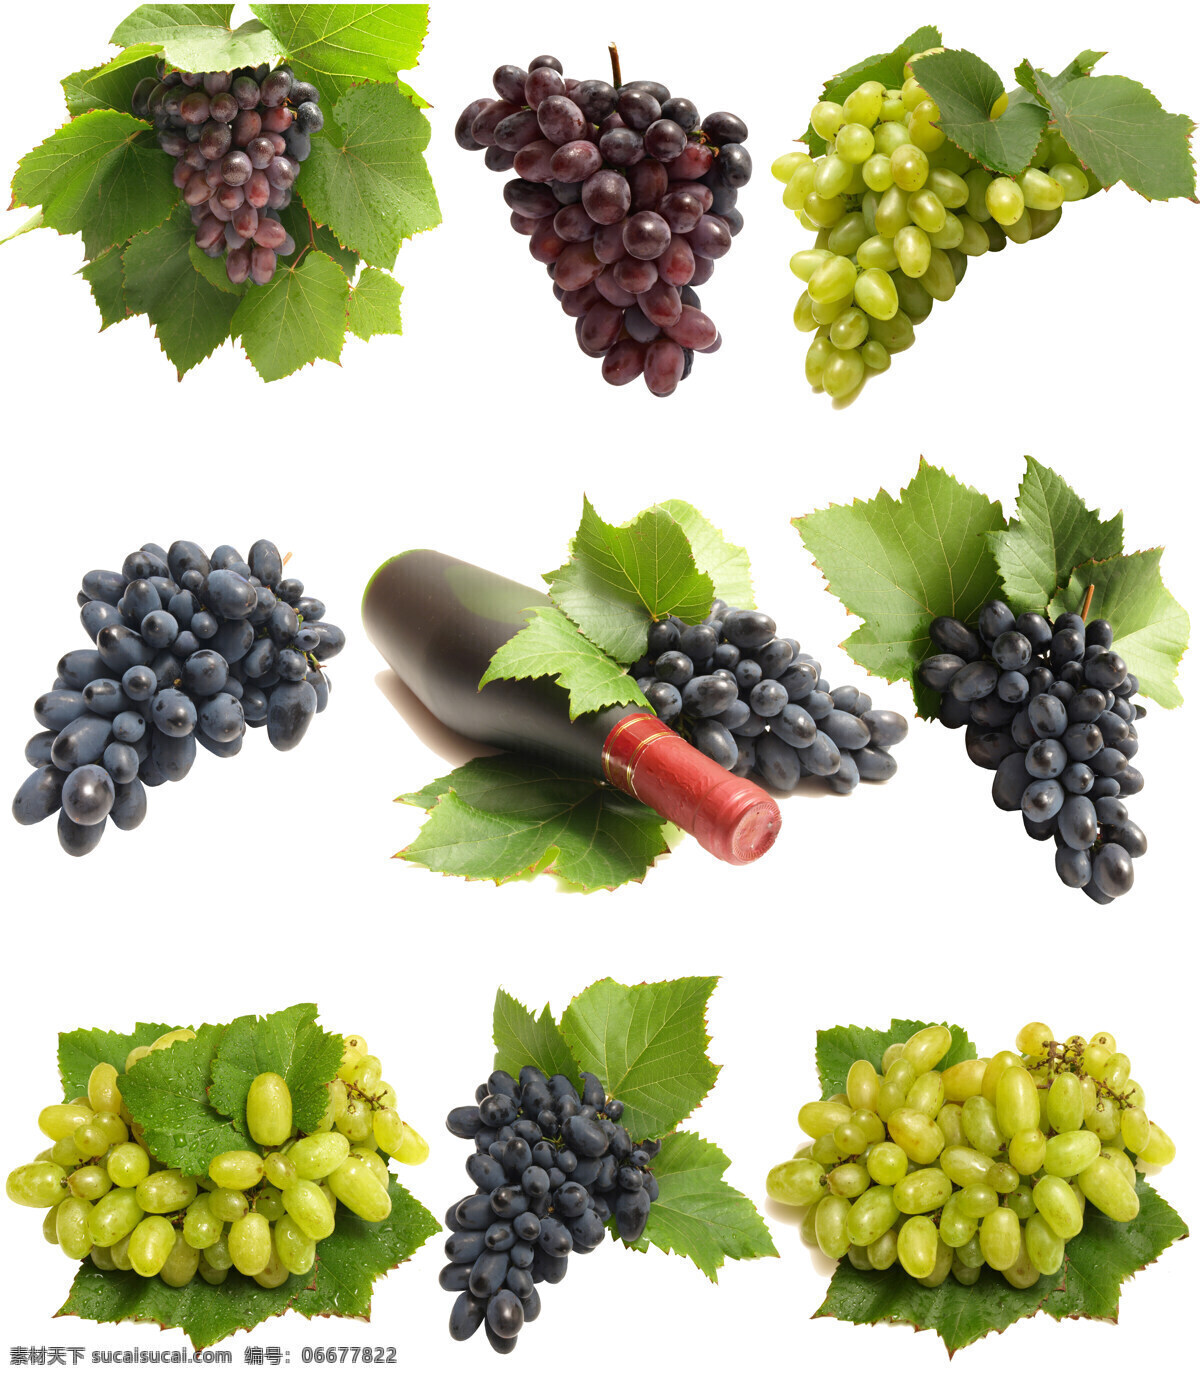 新鲜 葡萄 葡萄酒 葡萄与叶子 水果 新鲜水果 新鲜葡萄 紫葡萄 青葡萄 一串 葡萄叶 绿叶 叶子 酒瓶 一瓶葡萄酒 高清图片 蔬菜图片 餐饮美食